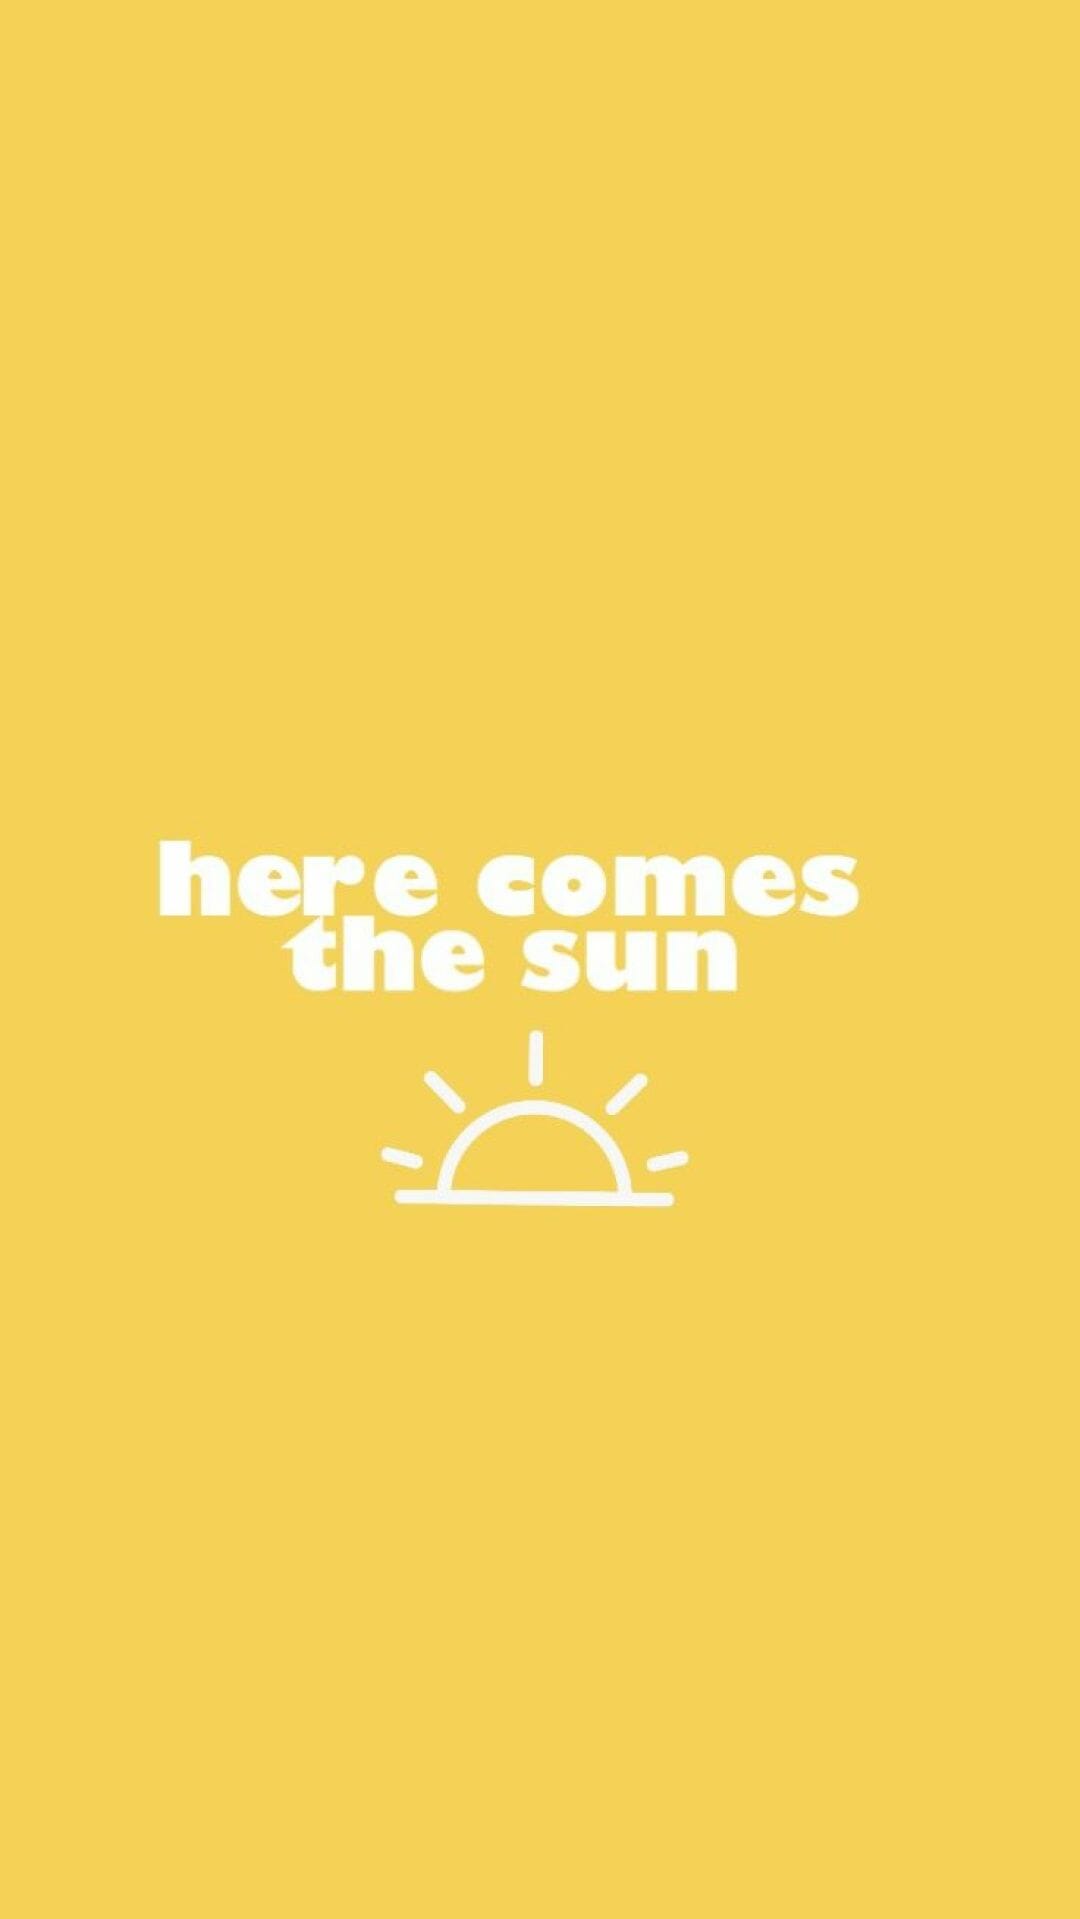 Here comes the sun wallpaper - Sun